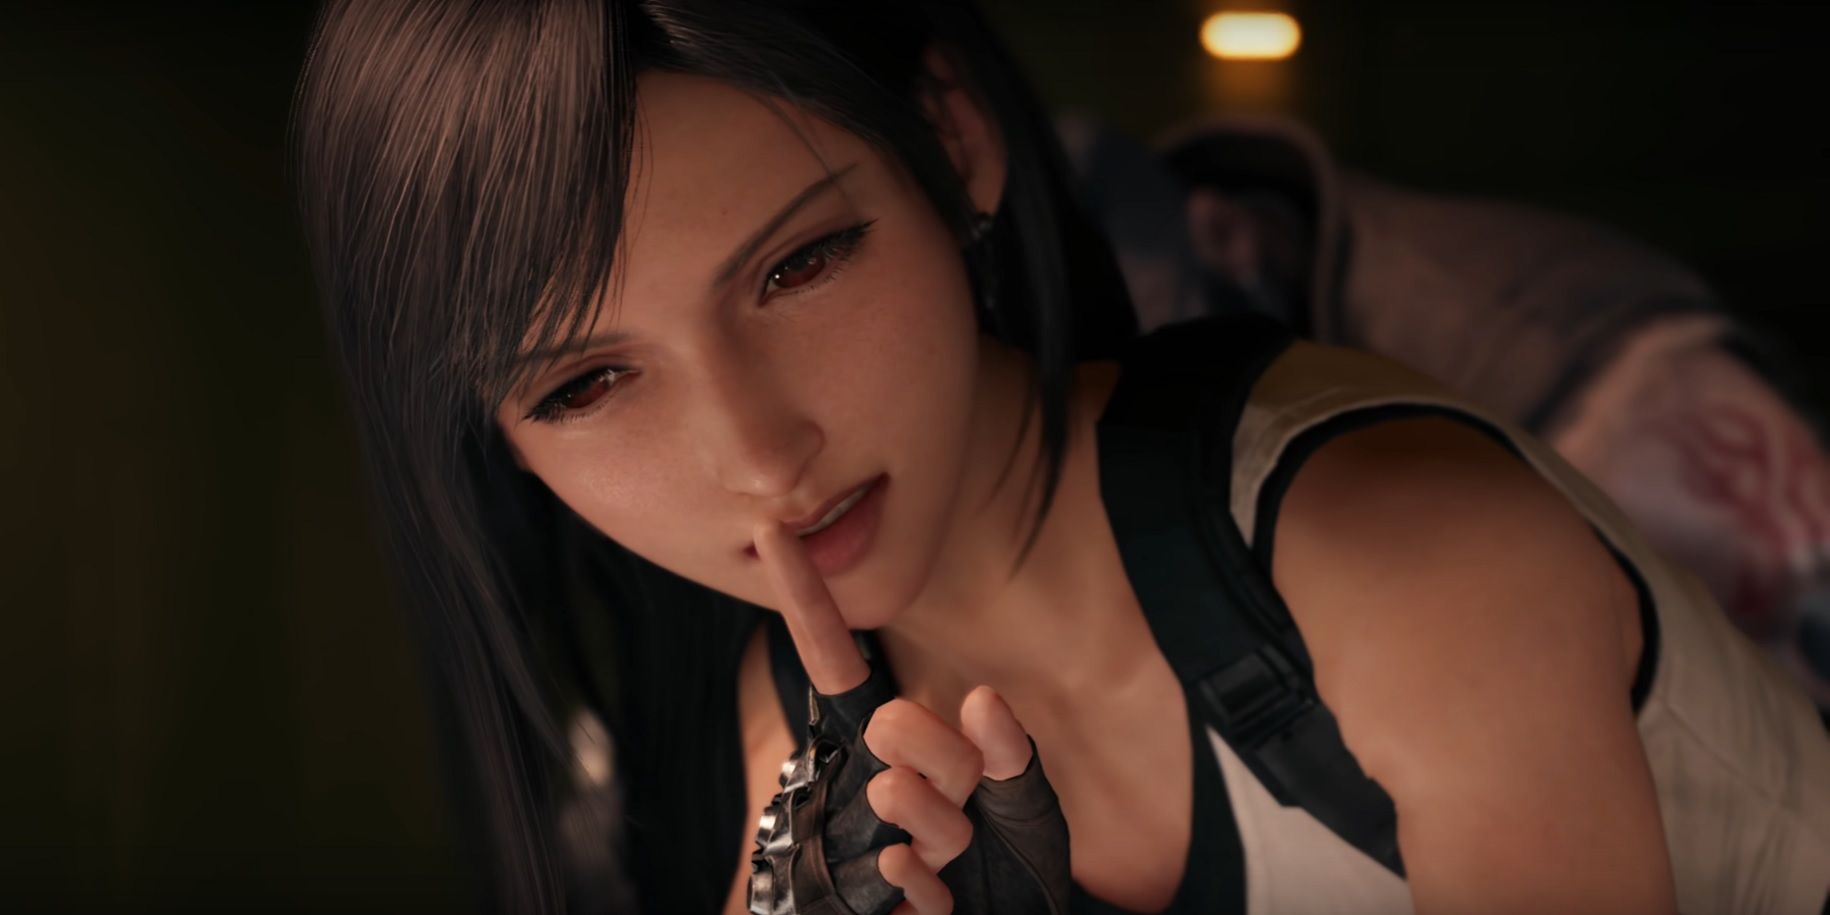 Tifa em Final Fantasy 7 Remake, colocando um dedo nos lábios para calar alguém.